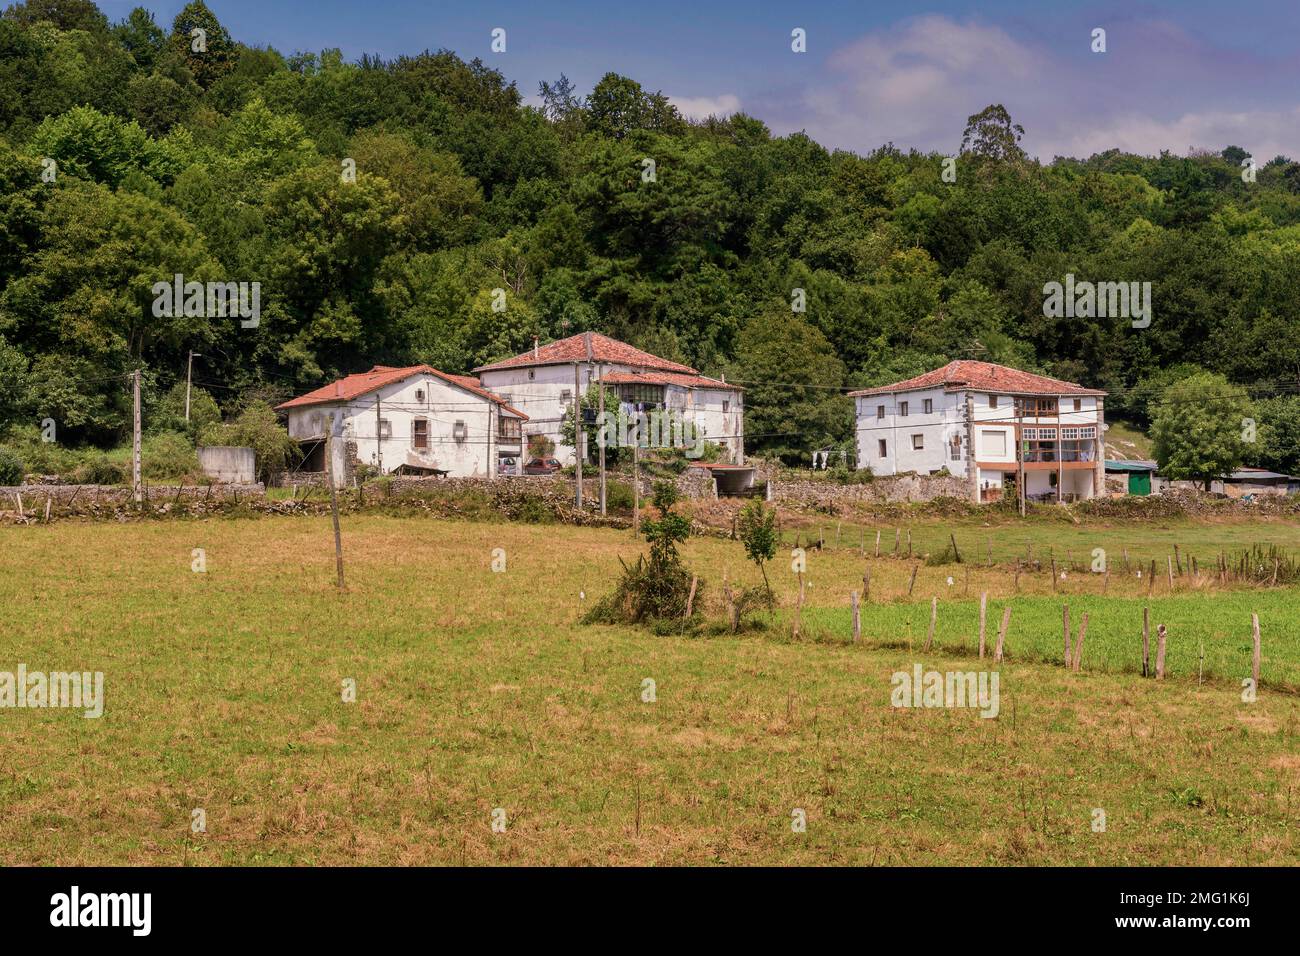 Tres grandes casas de campo individuales con su huerto y un bosque de árboles al fondo típico de Cantabria en el norte de España Foto de stock